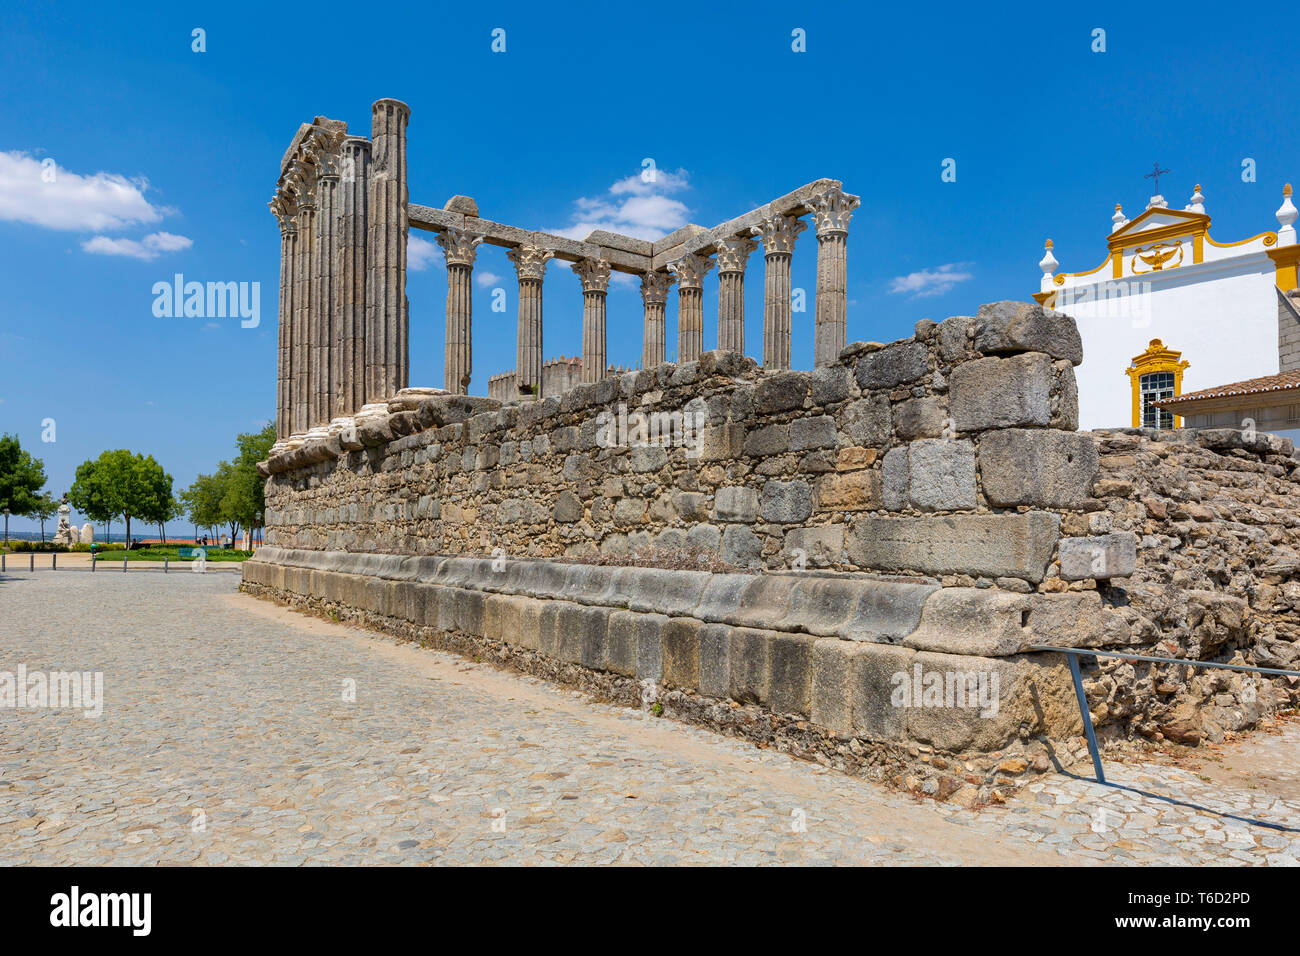 Templo romano de Évora (Templo de Diana), Alentejo, Portugal Foto de stock